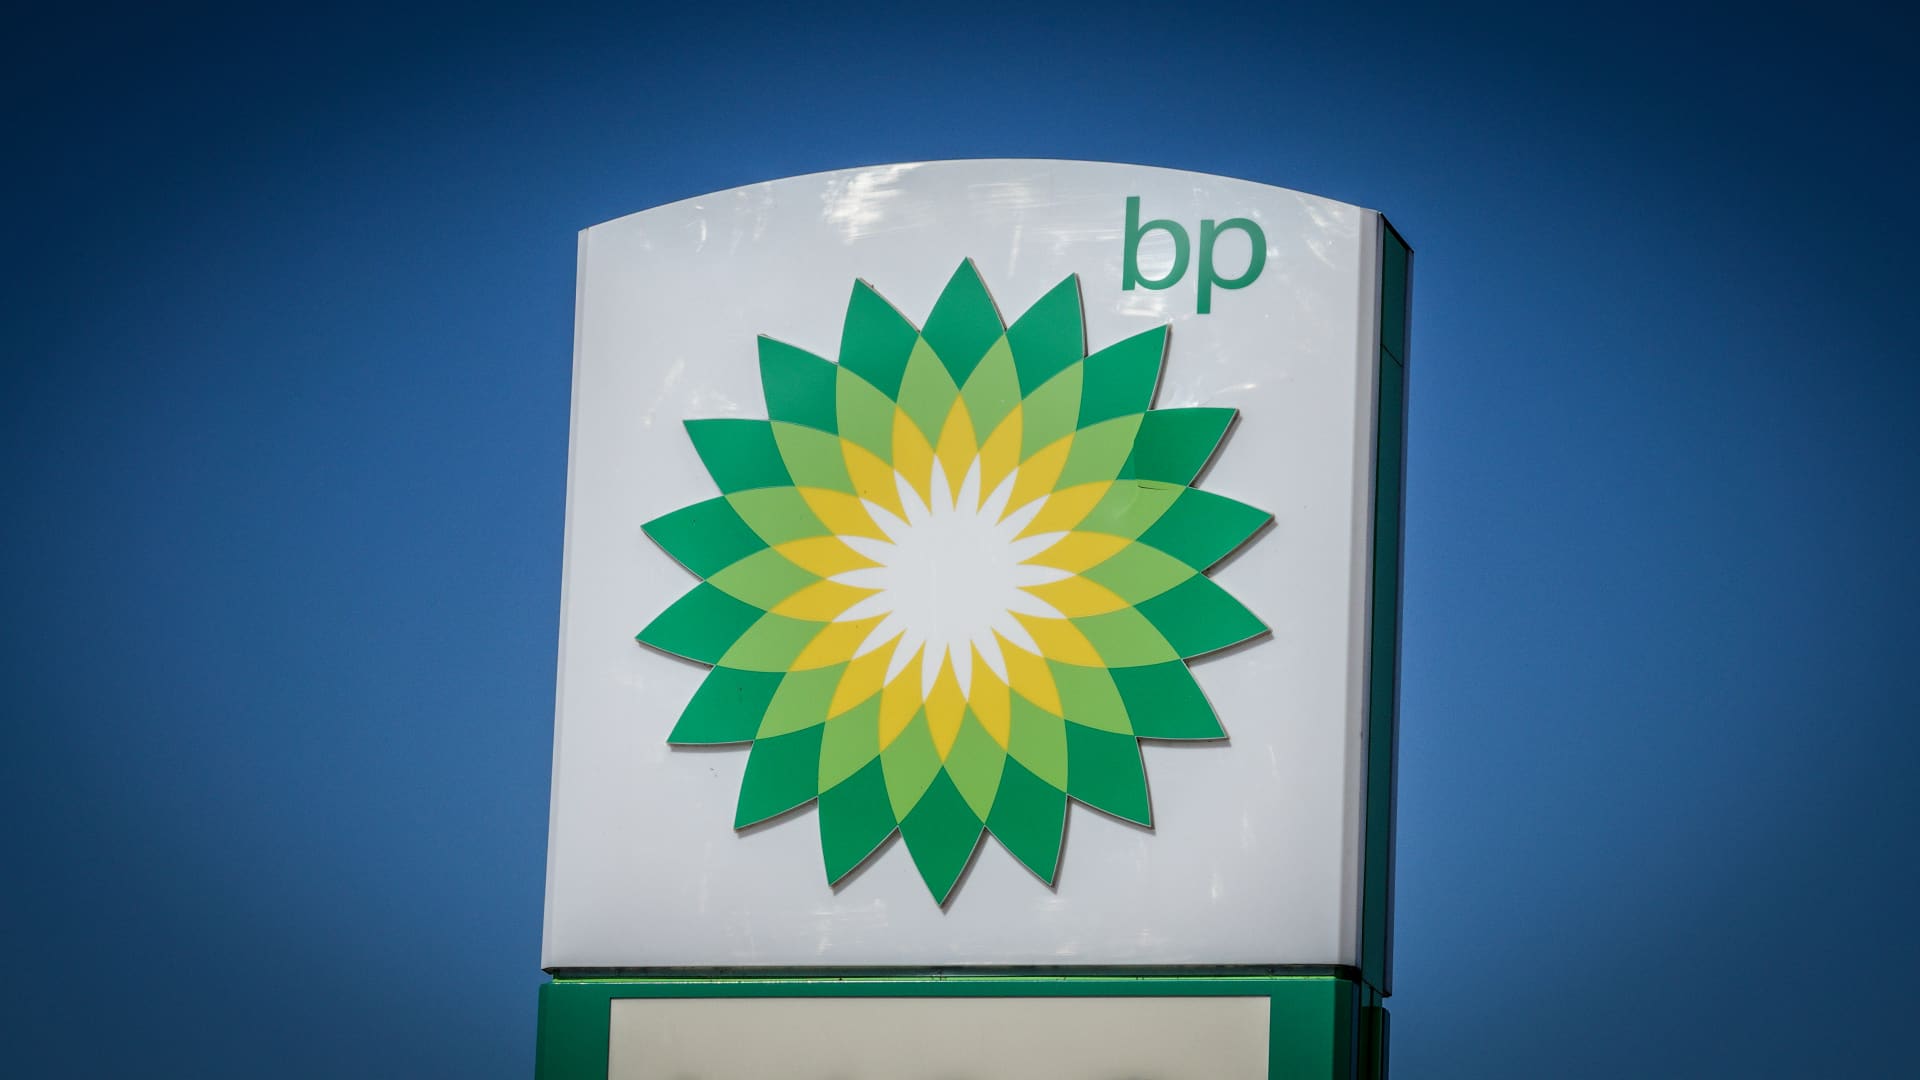 BP shares down 4% after third-quarter profit plummet